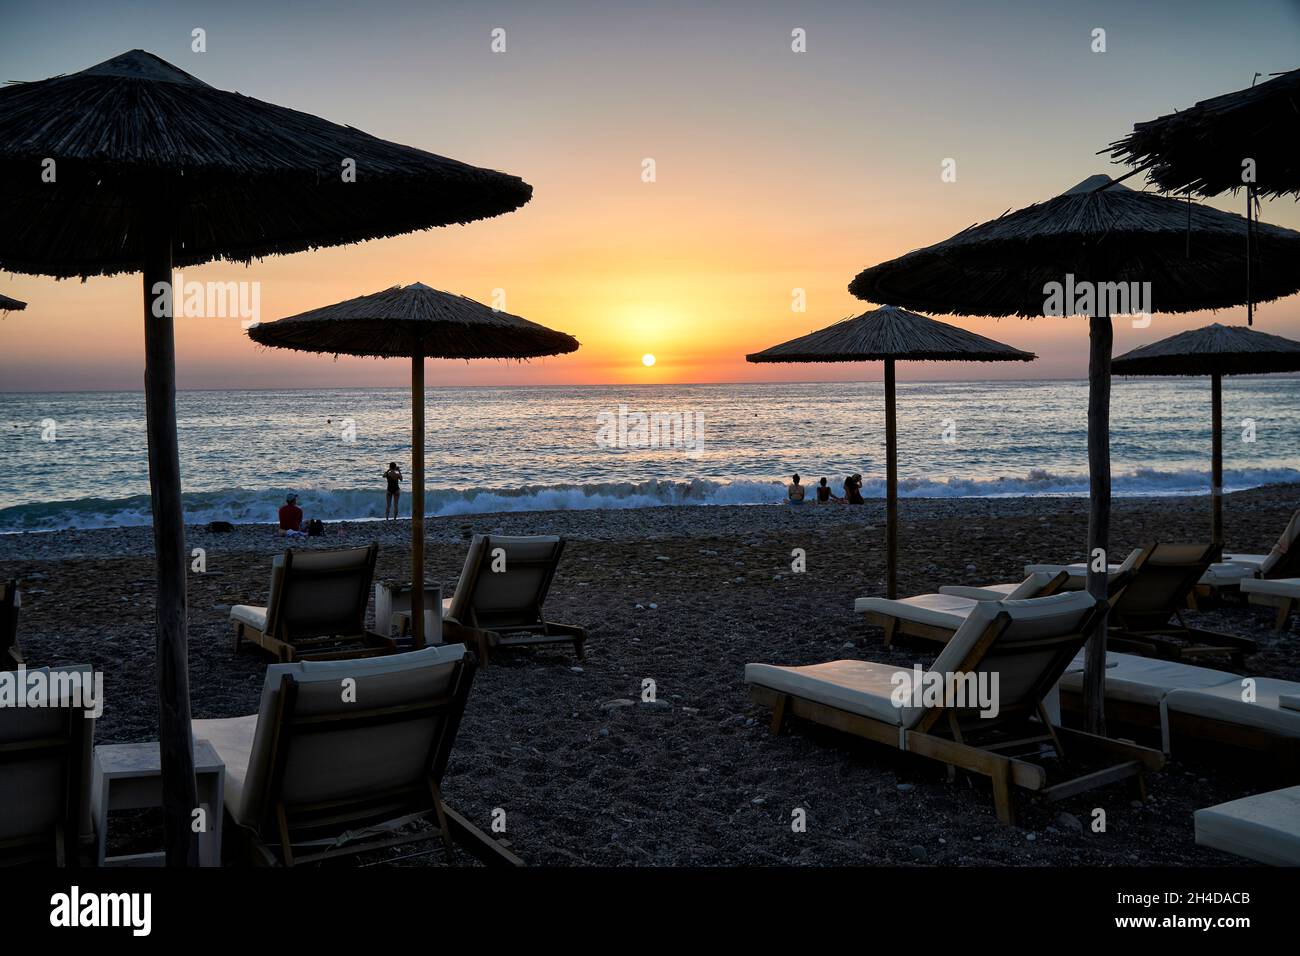 Foto von Sonnenschirmen und Liegestühlen am Strand in Coral Bay, Zypern bei Sonnenuntergang Stockfoto